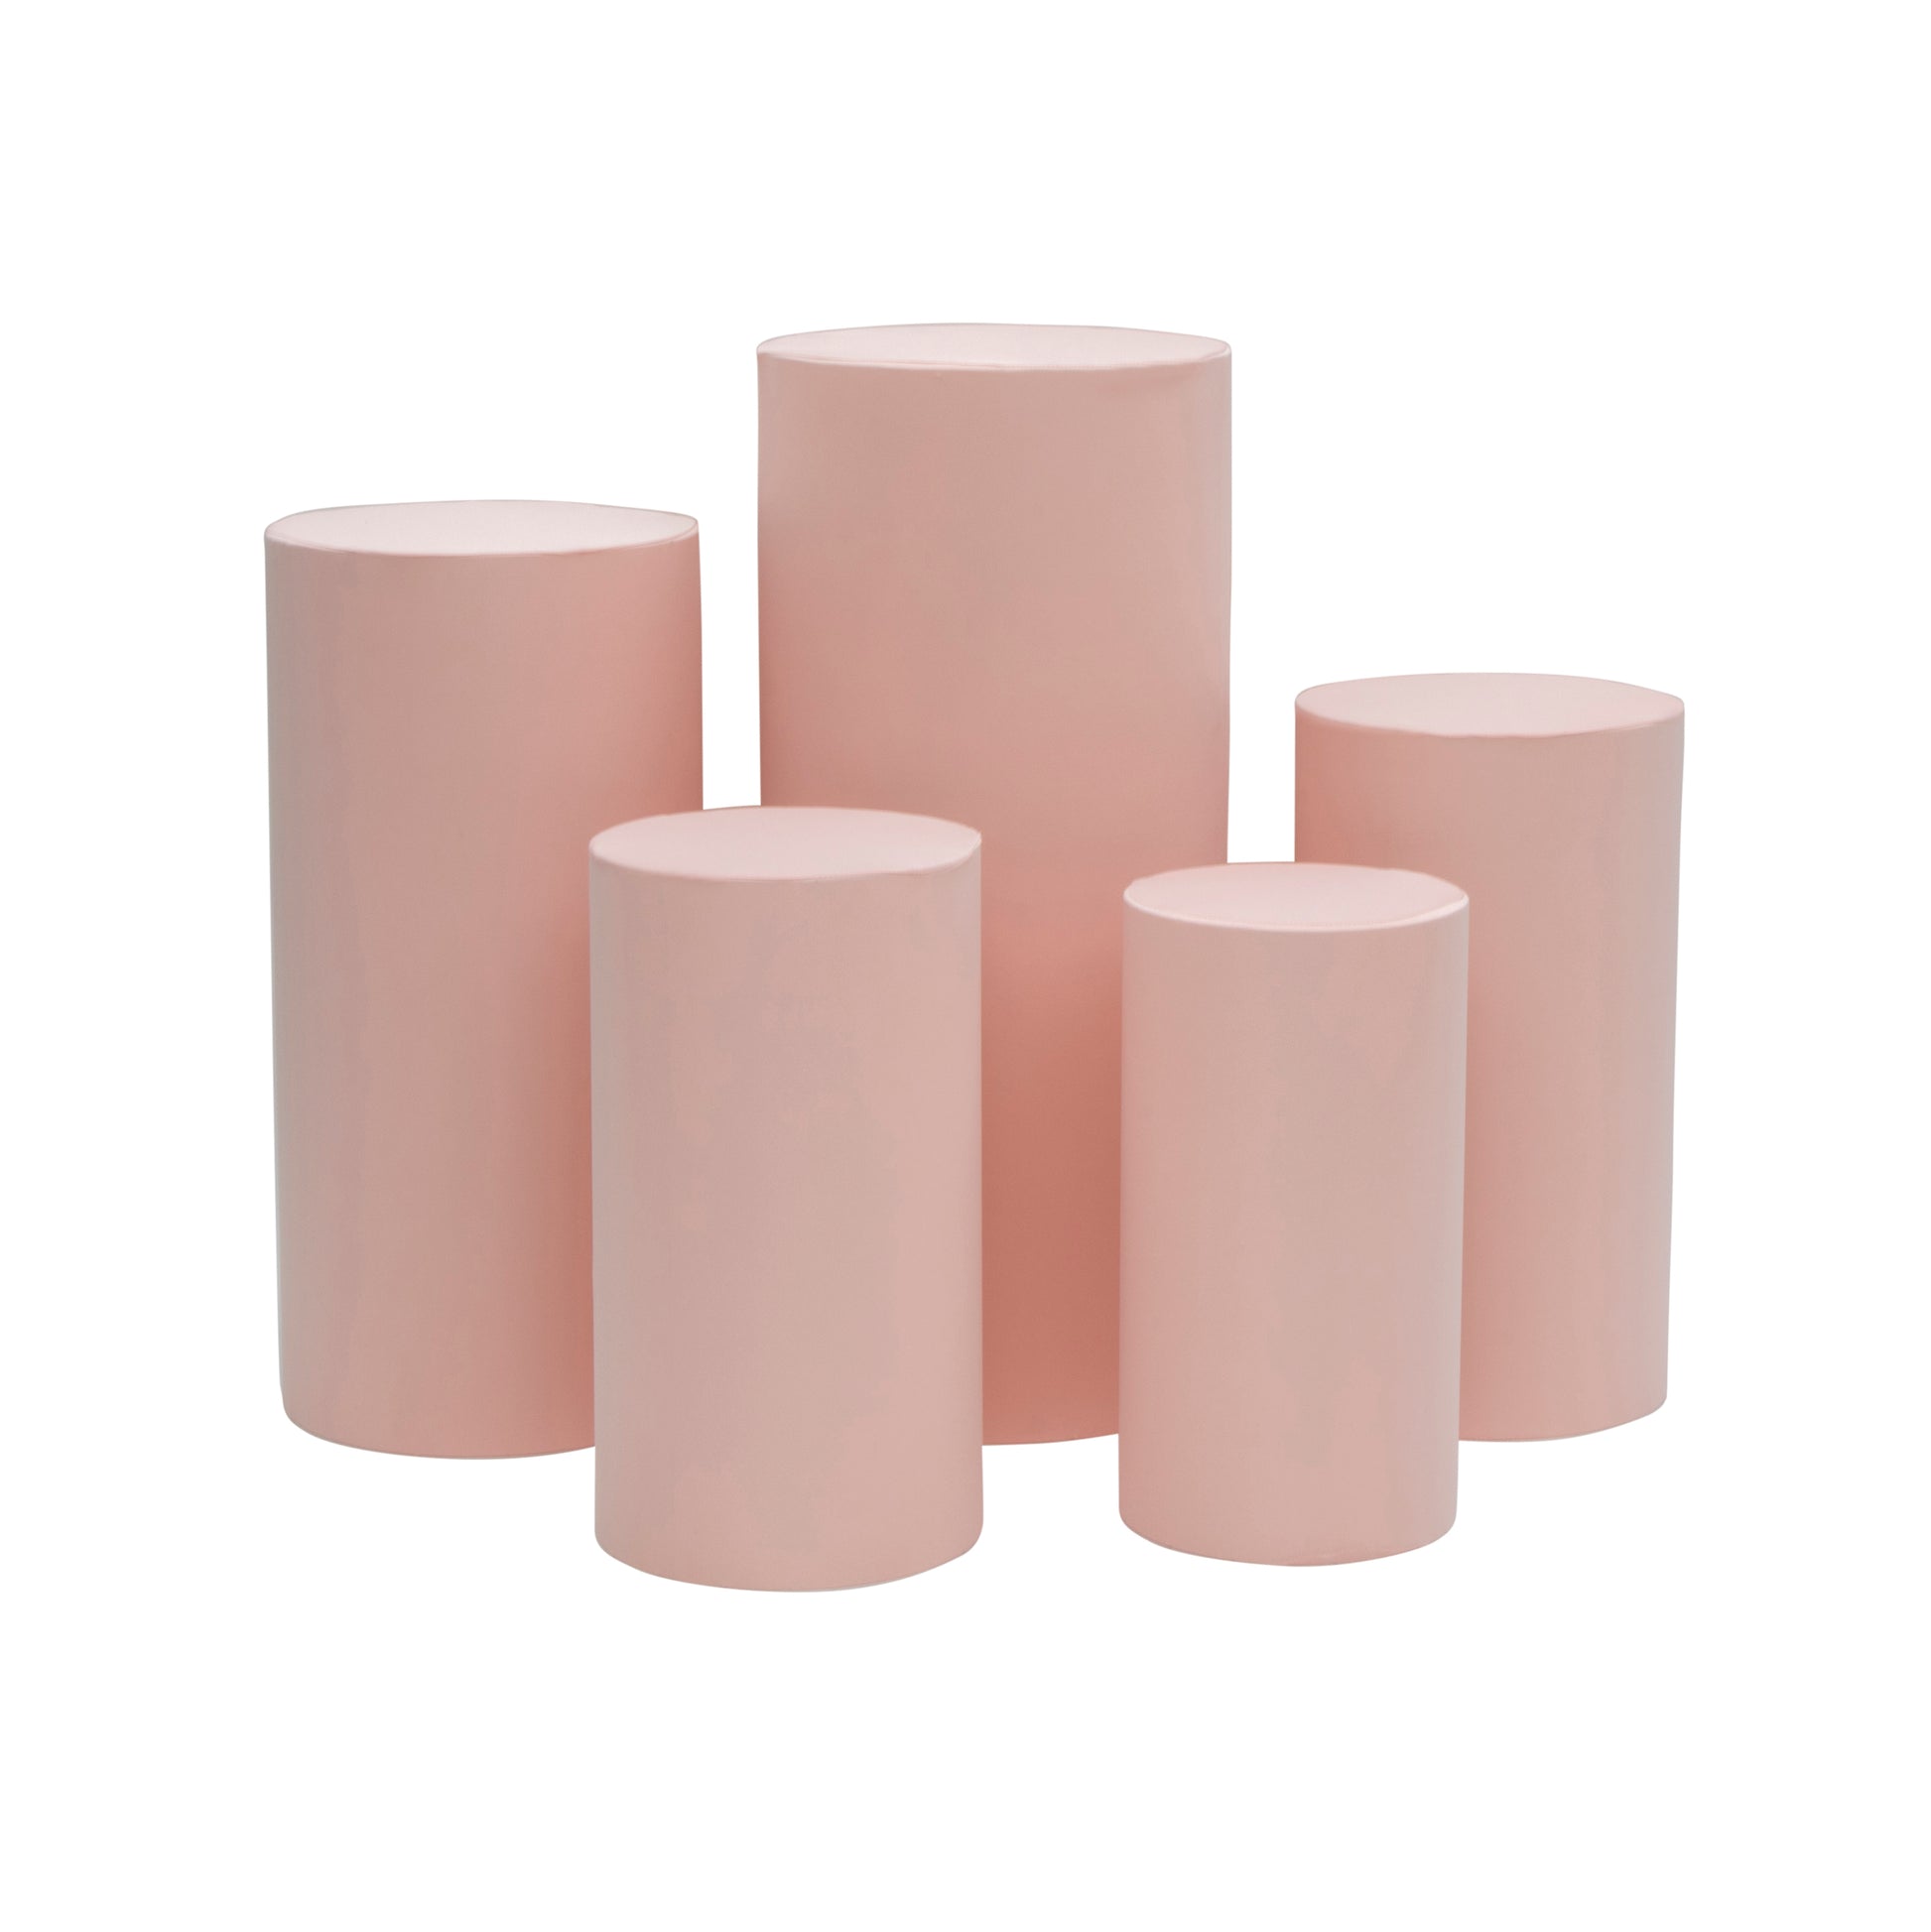 Spandex Pillar Covers for Metal Cylinder Pedestal Stands 5 pcs/set - Blush/Rose Gold